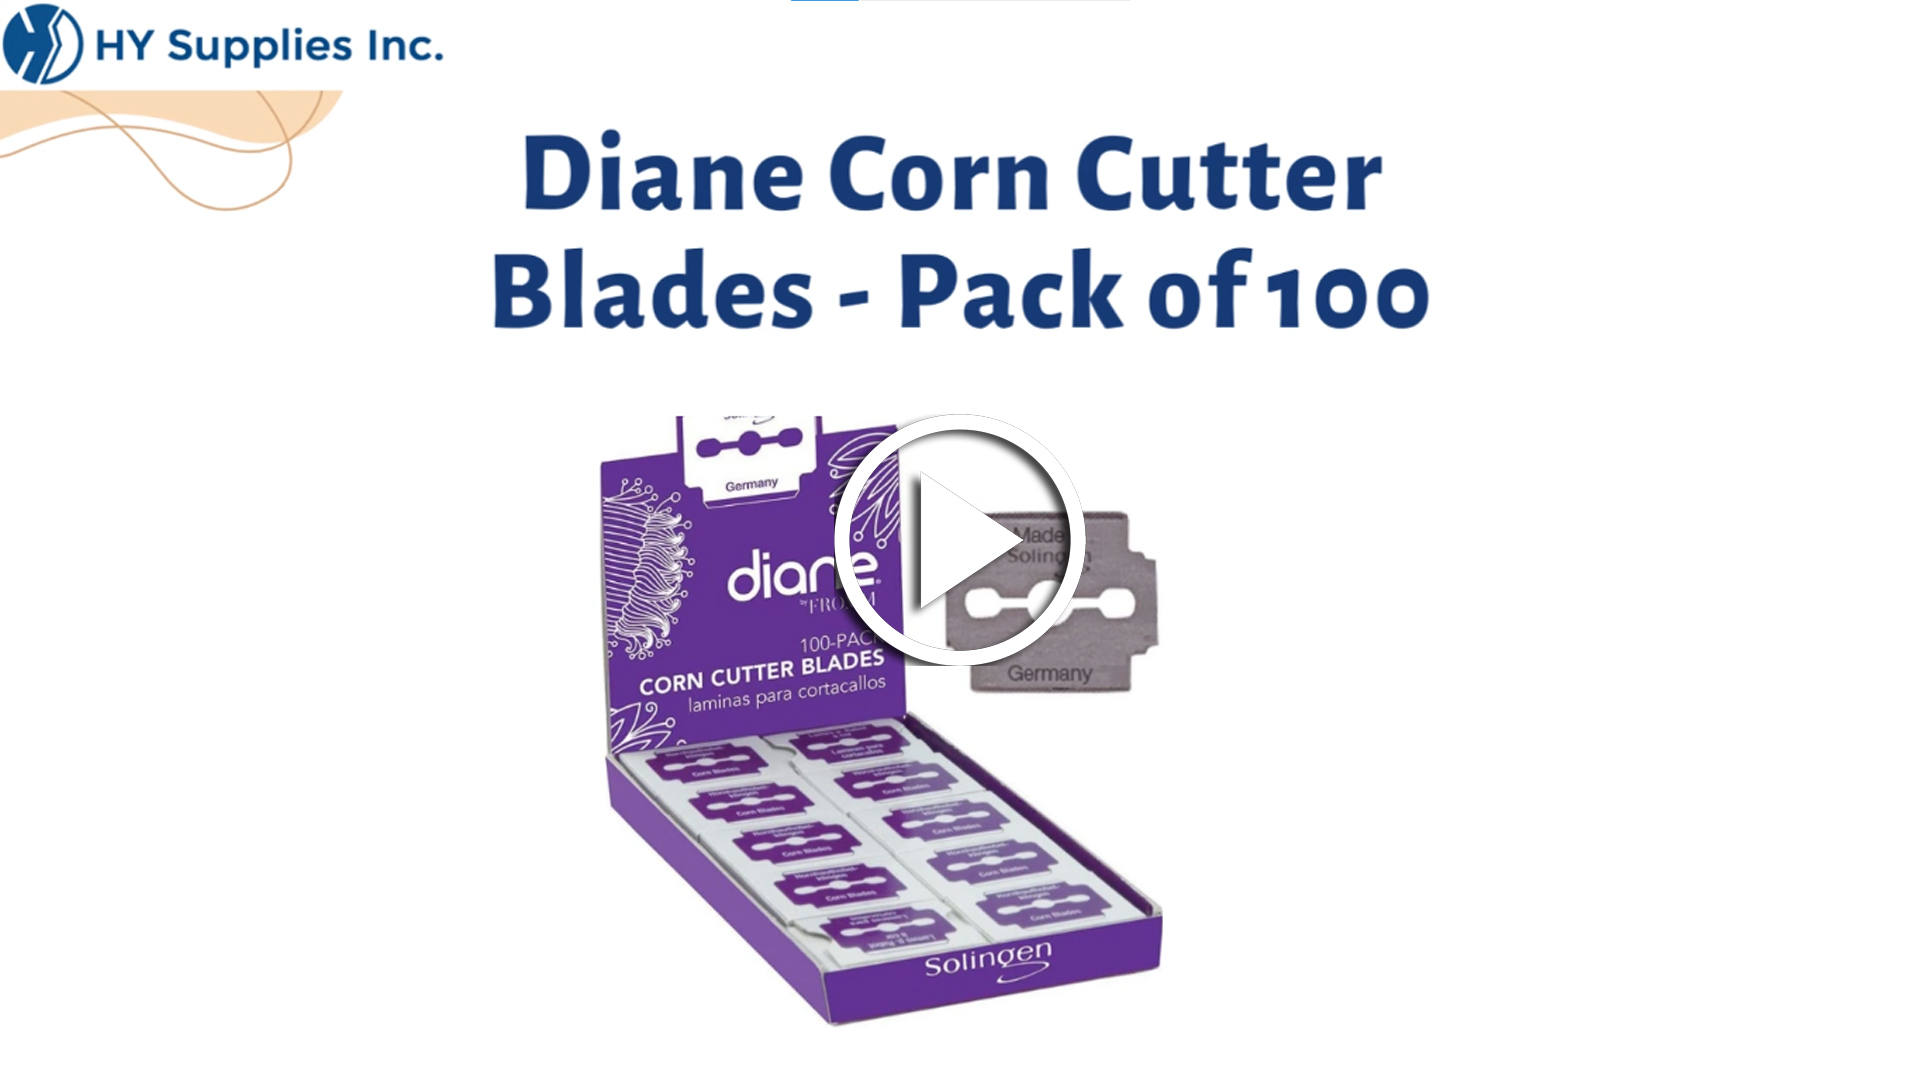 Diane Corn Cutter Blades - Pack of 100